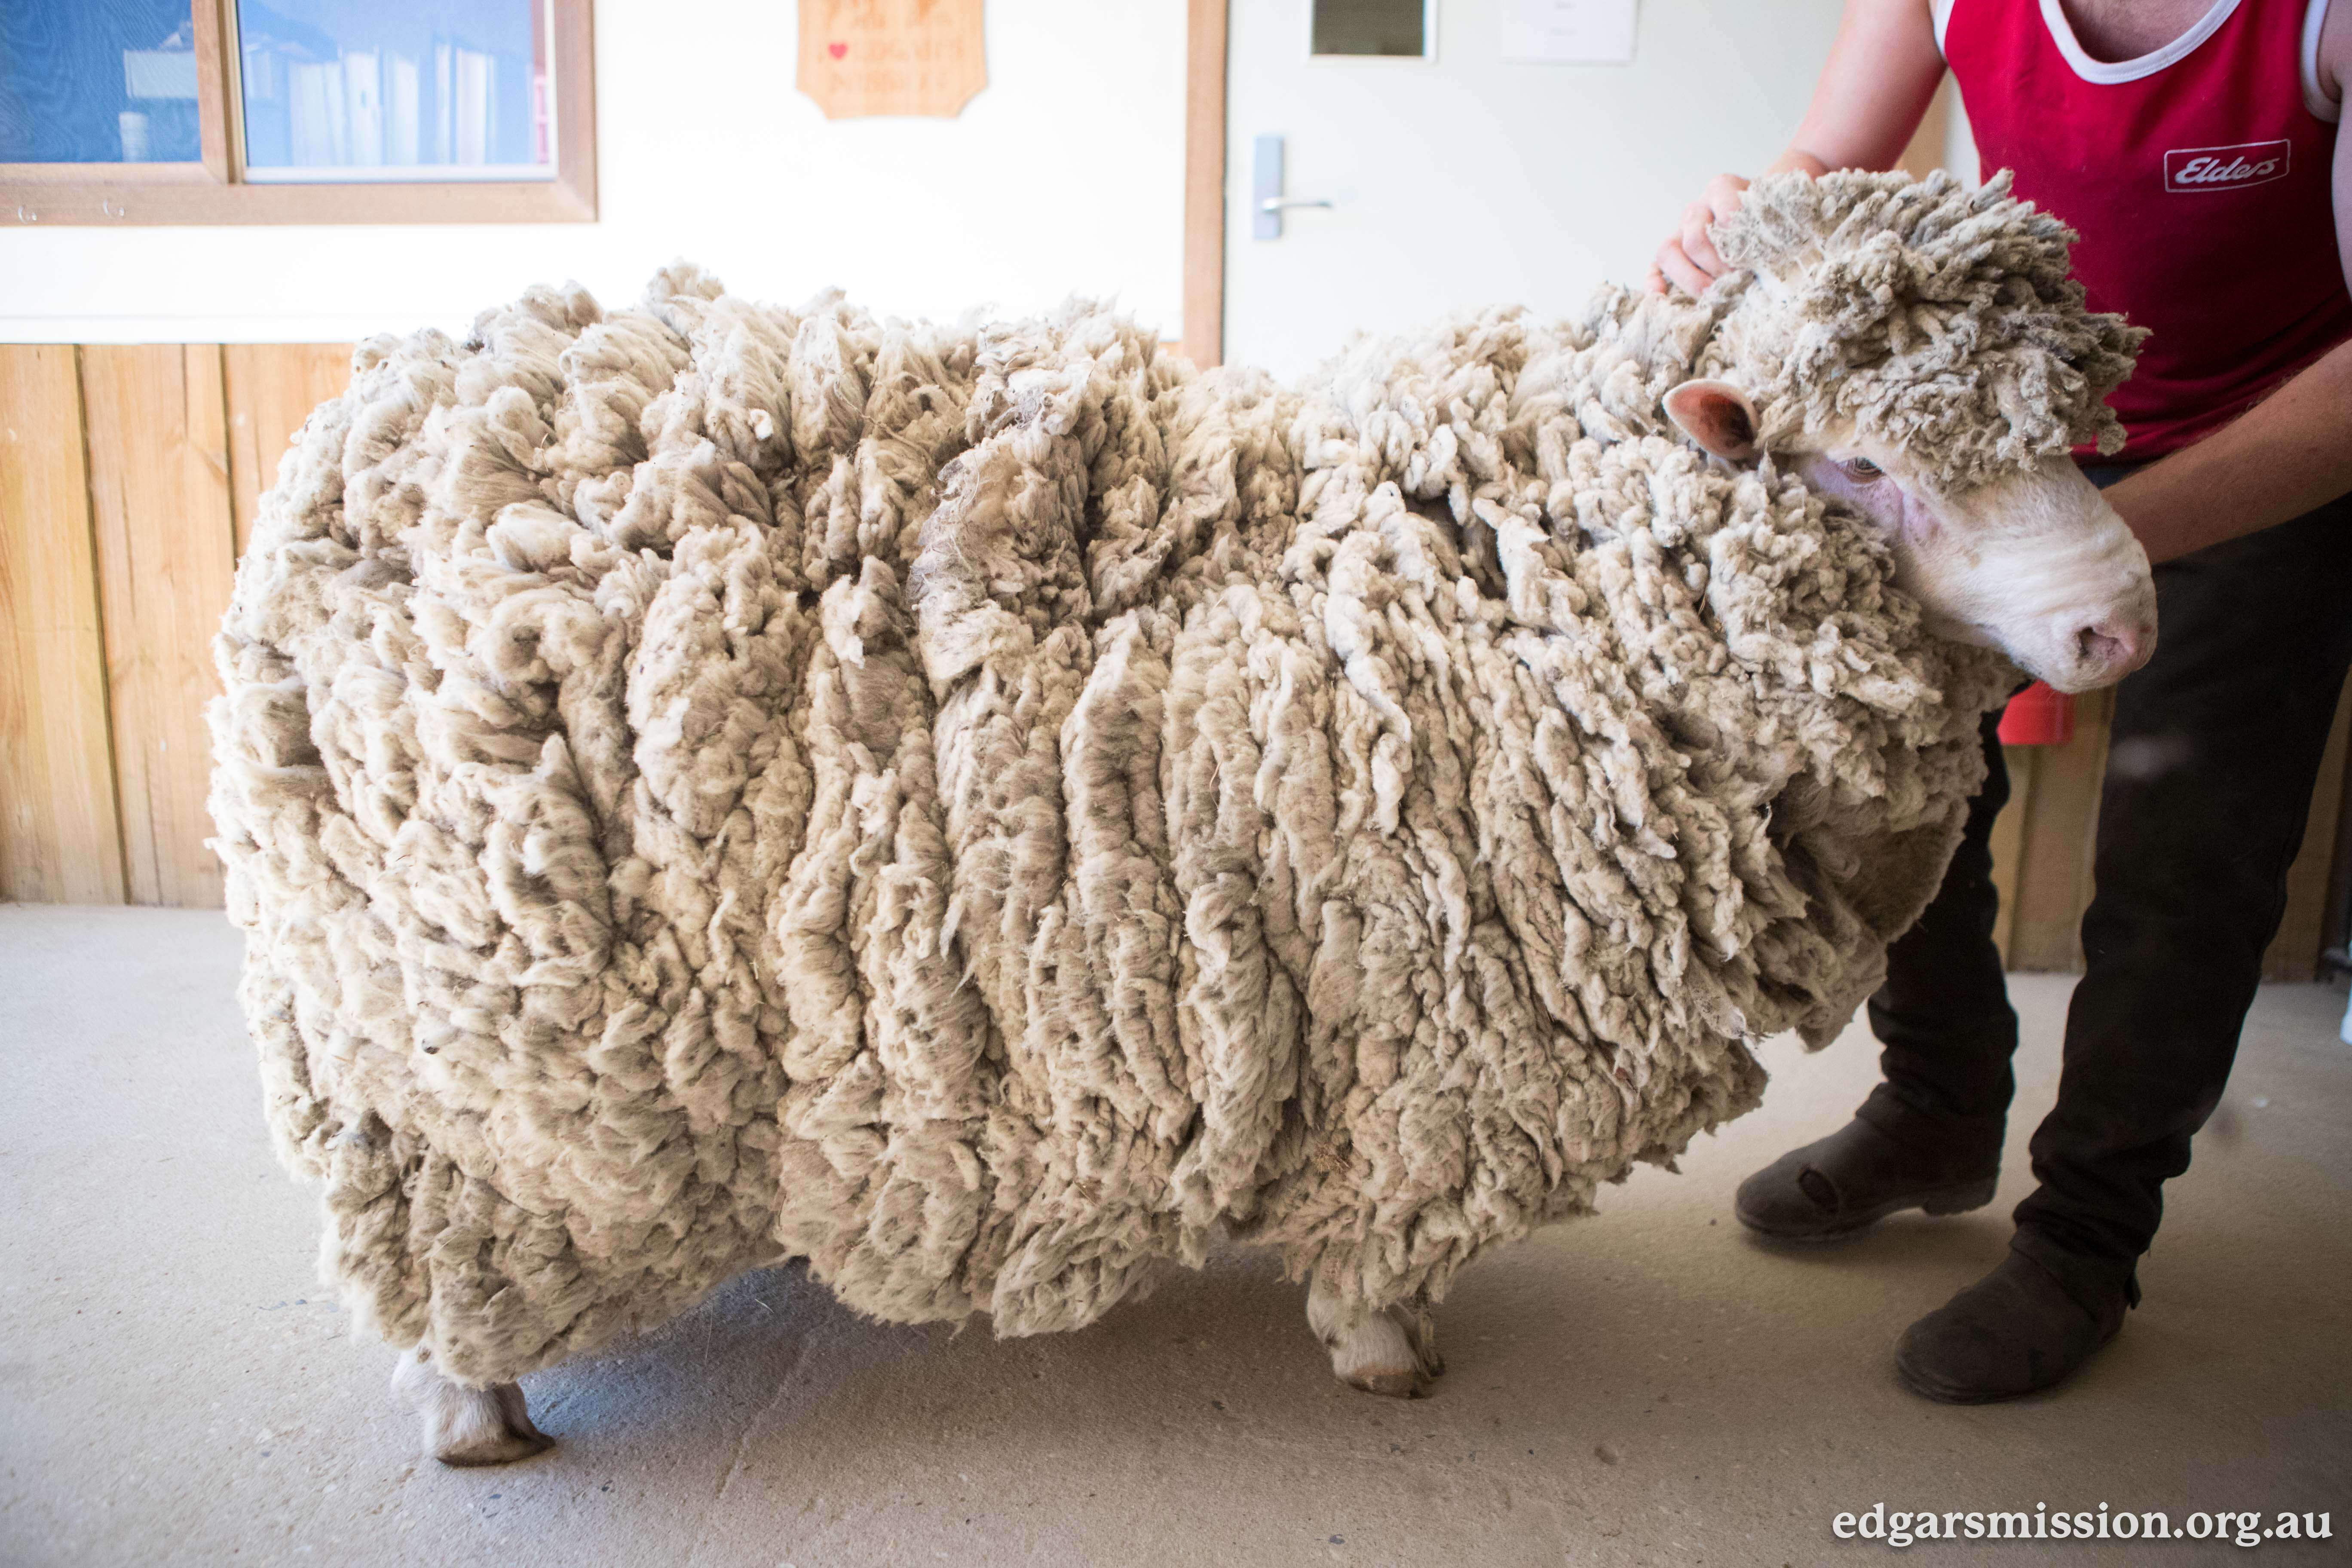 Sheep with overgrown fleece